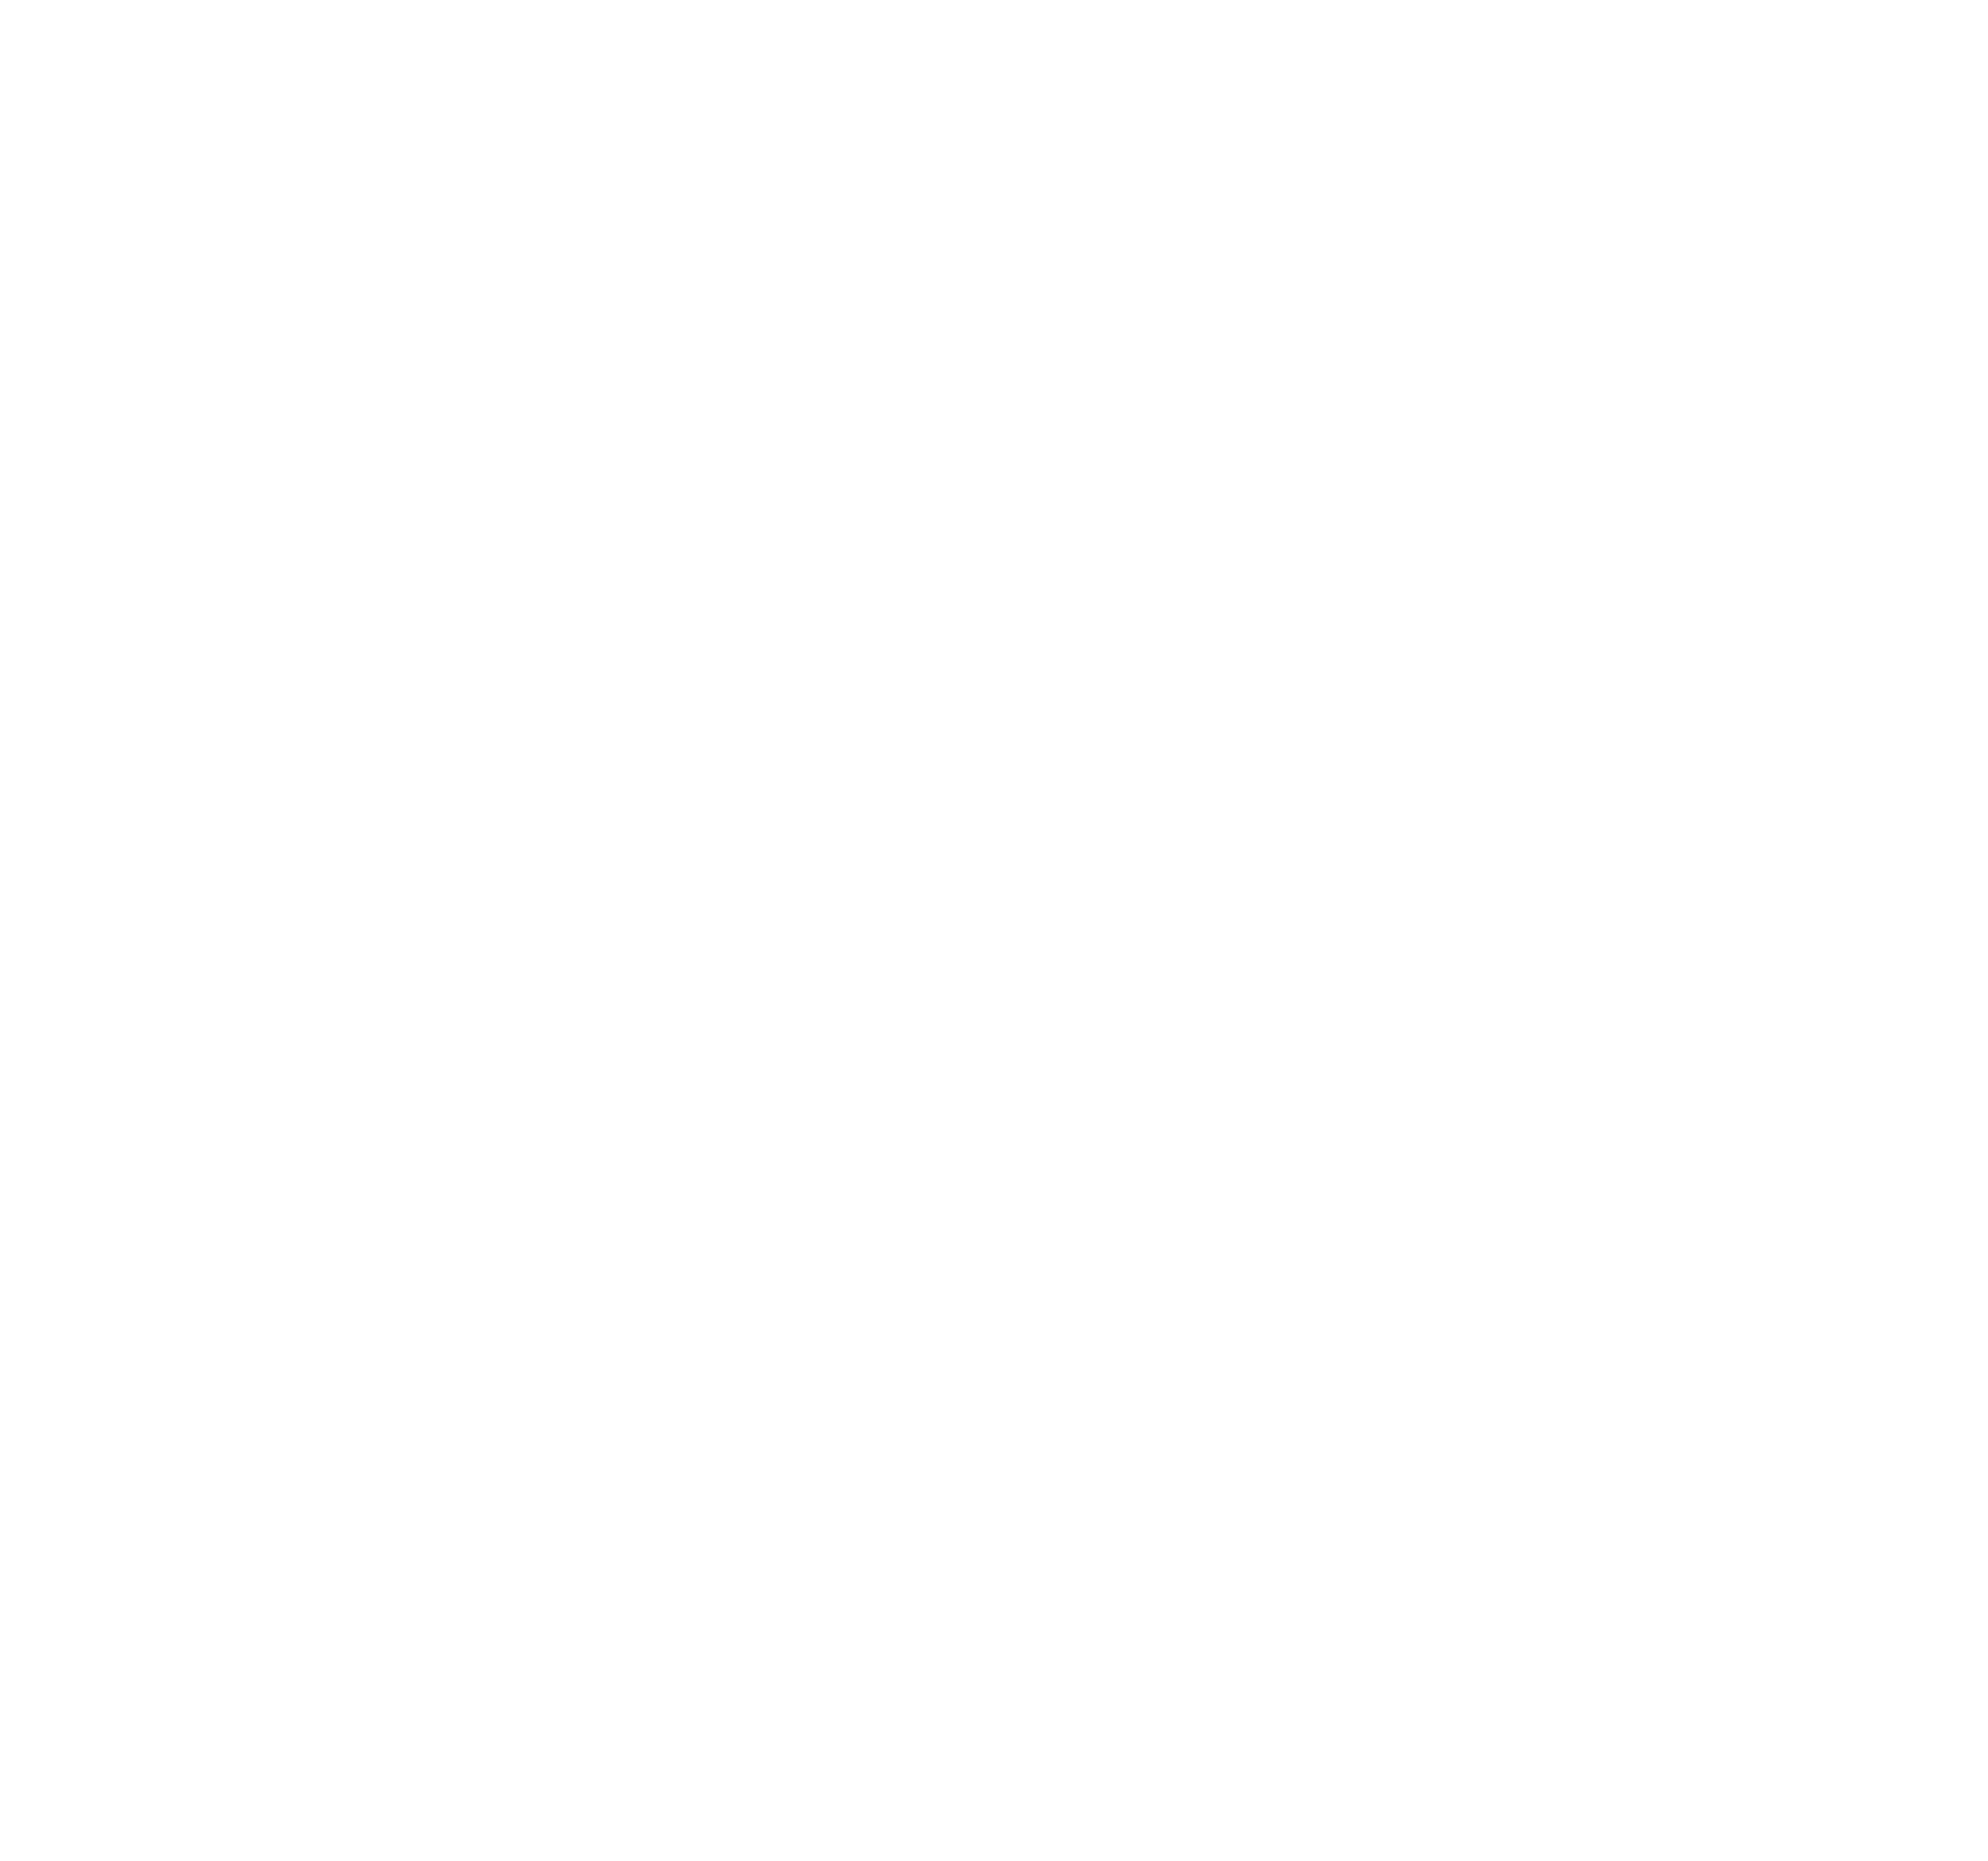 NWCM